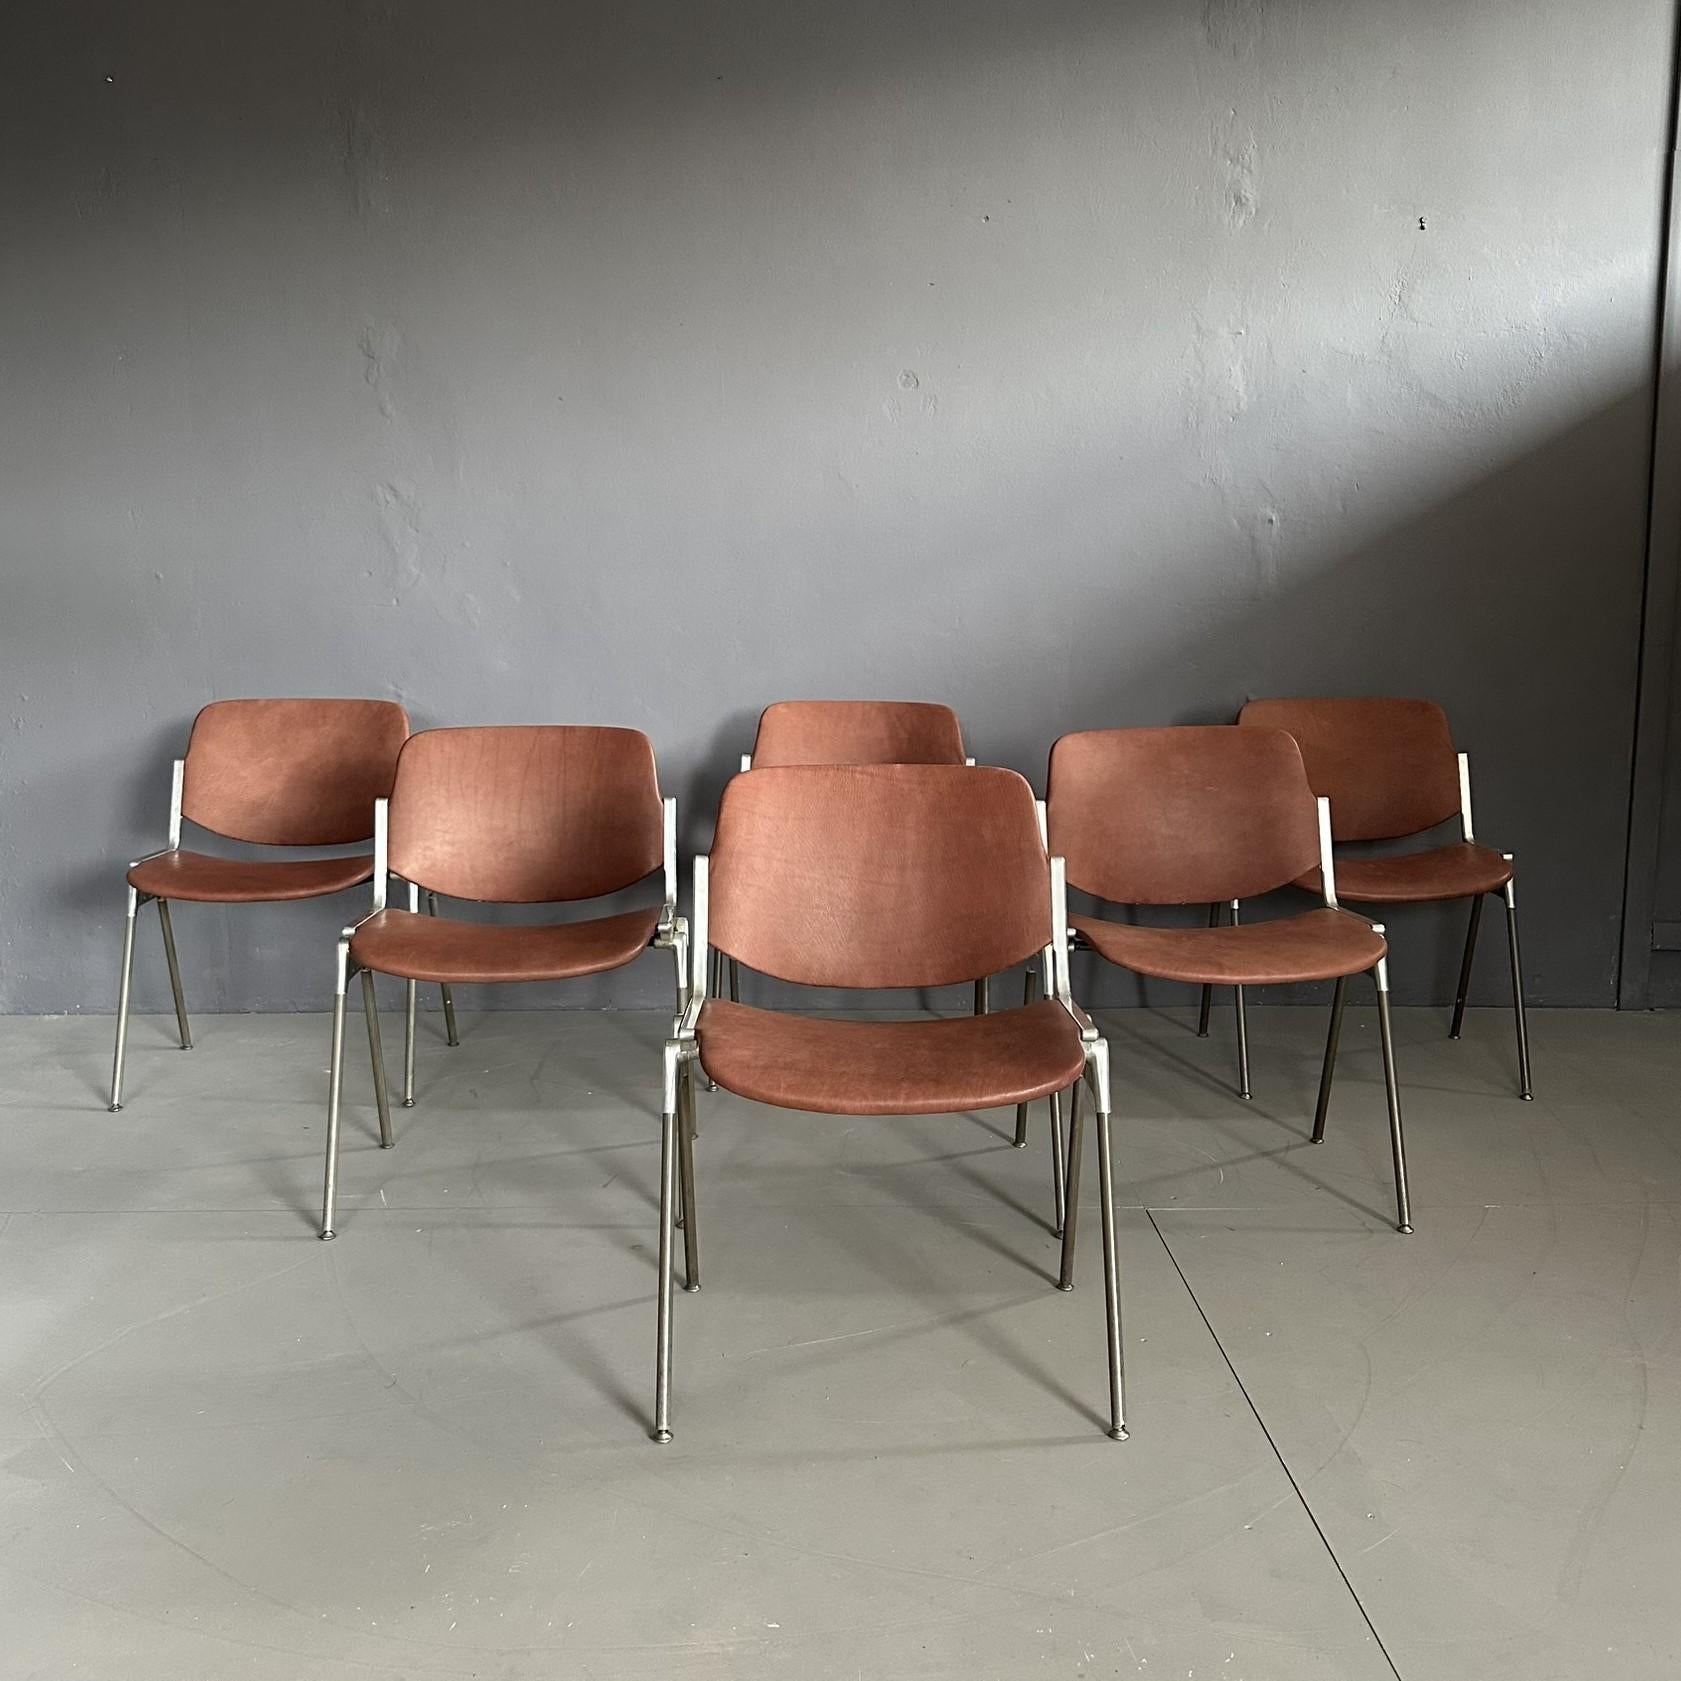 Ensemble de 6 chaises vintage DSC 106 de 1970 par Giancarlo Piretti pour Anonima Castelli.
Cadre en aluminium, revêtement en cuir brun.
La marque est présente sur la structure.
La chaise DSC 106 est une pièce emblématique produite par Anonima